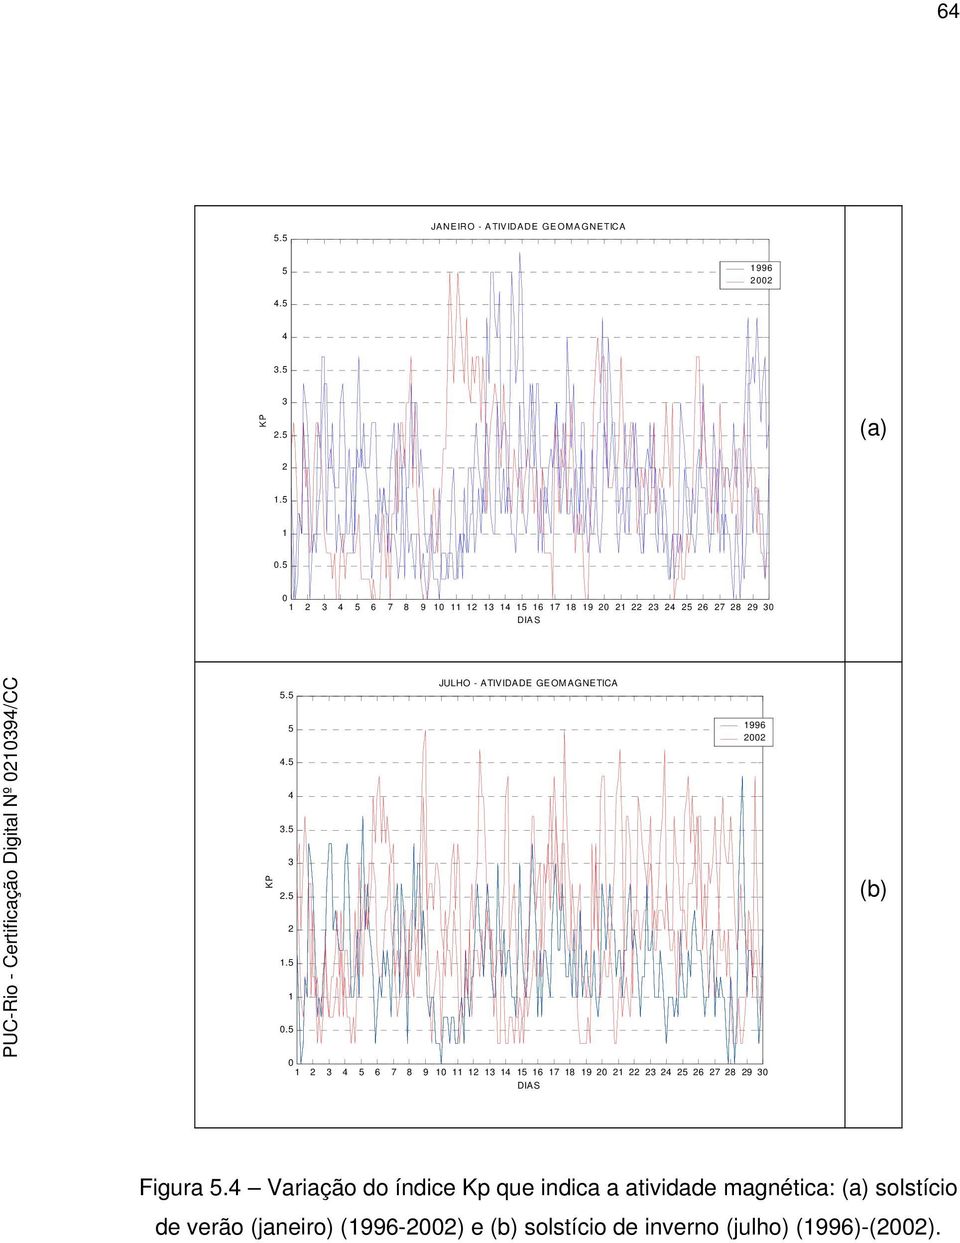 4 Variação do índice Kp que indica a atividade magnética: solstício de verão (janeiro) (996-22) e